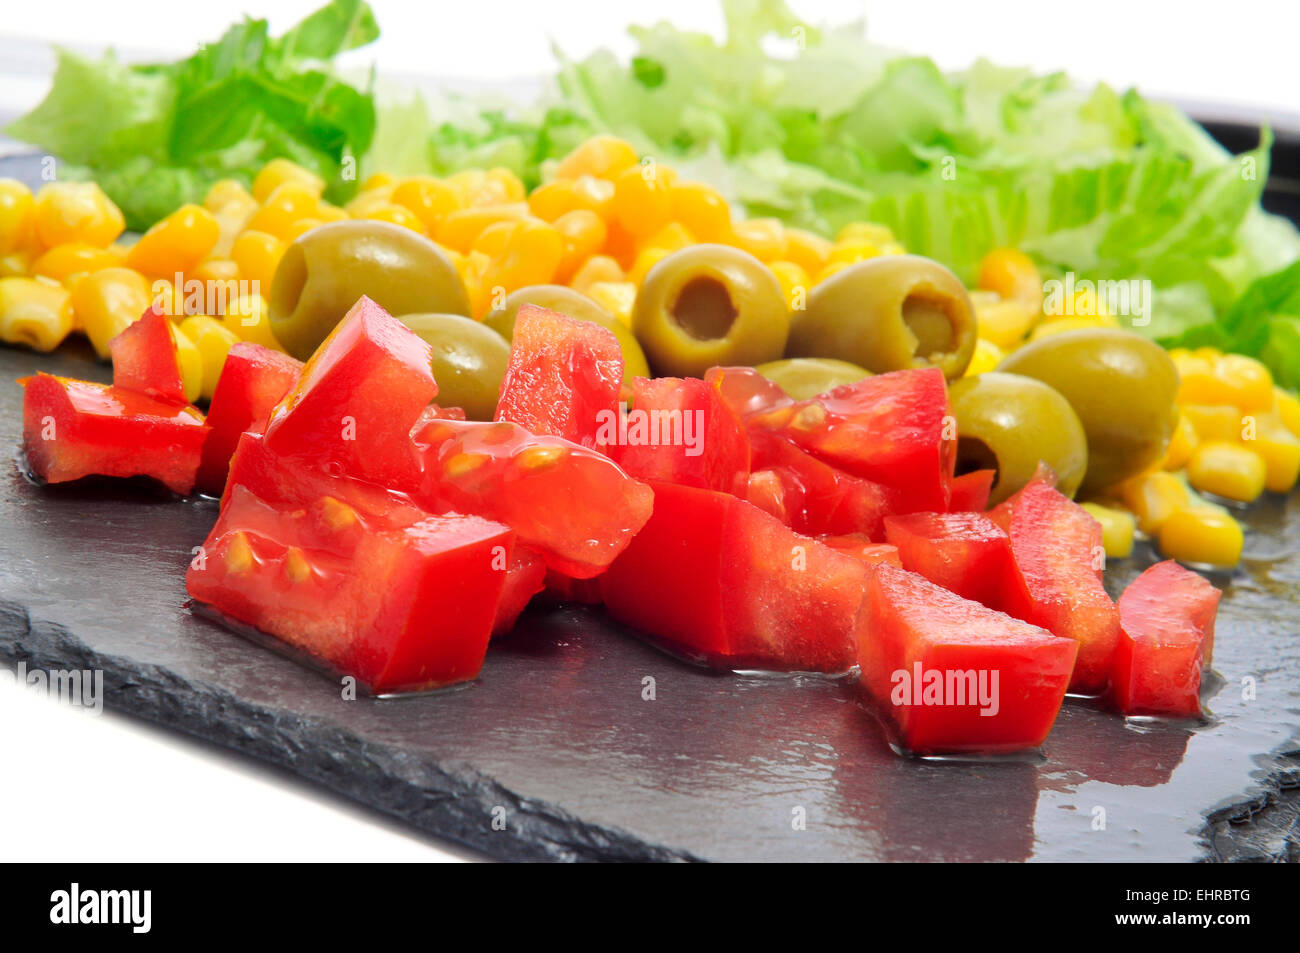 Libre de certains ingrédients, comme la tomate, olives, et laitue, sur une surface en ardoise Banque D'Images